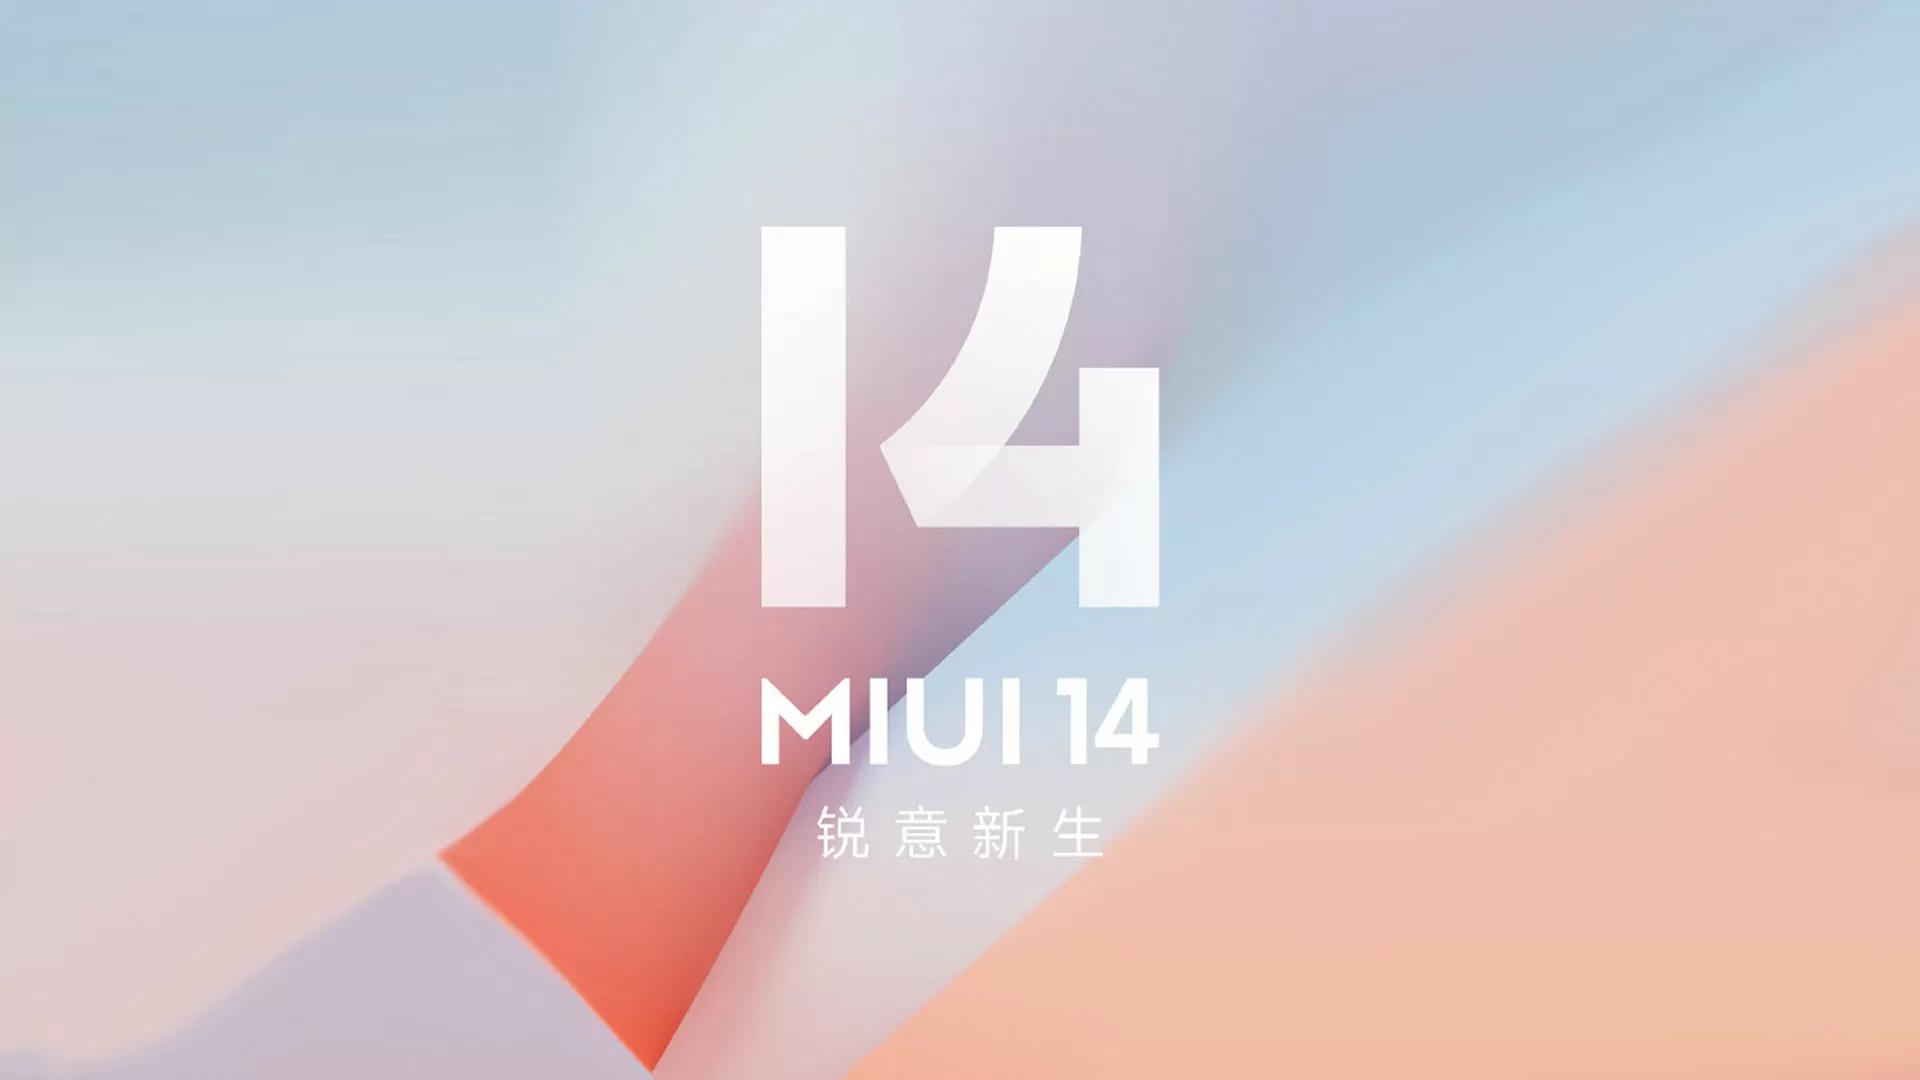 MIUI 14 ra mắt với nhiều cải tiến mới